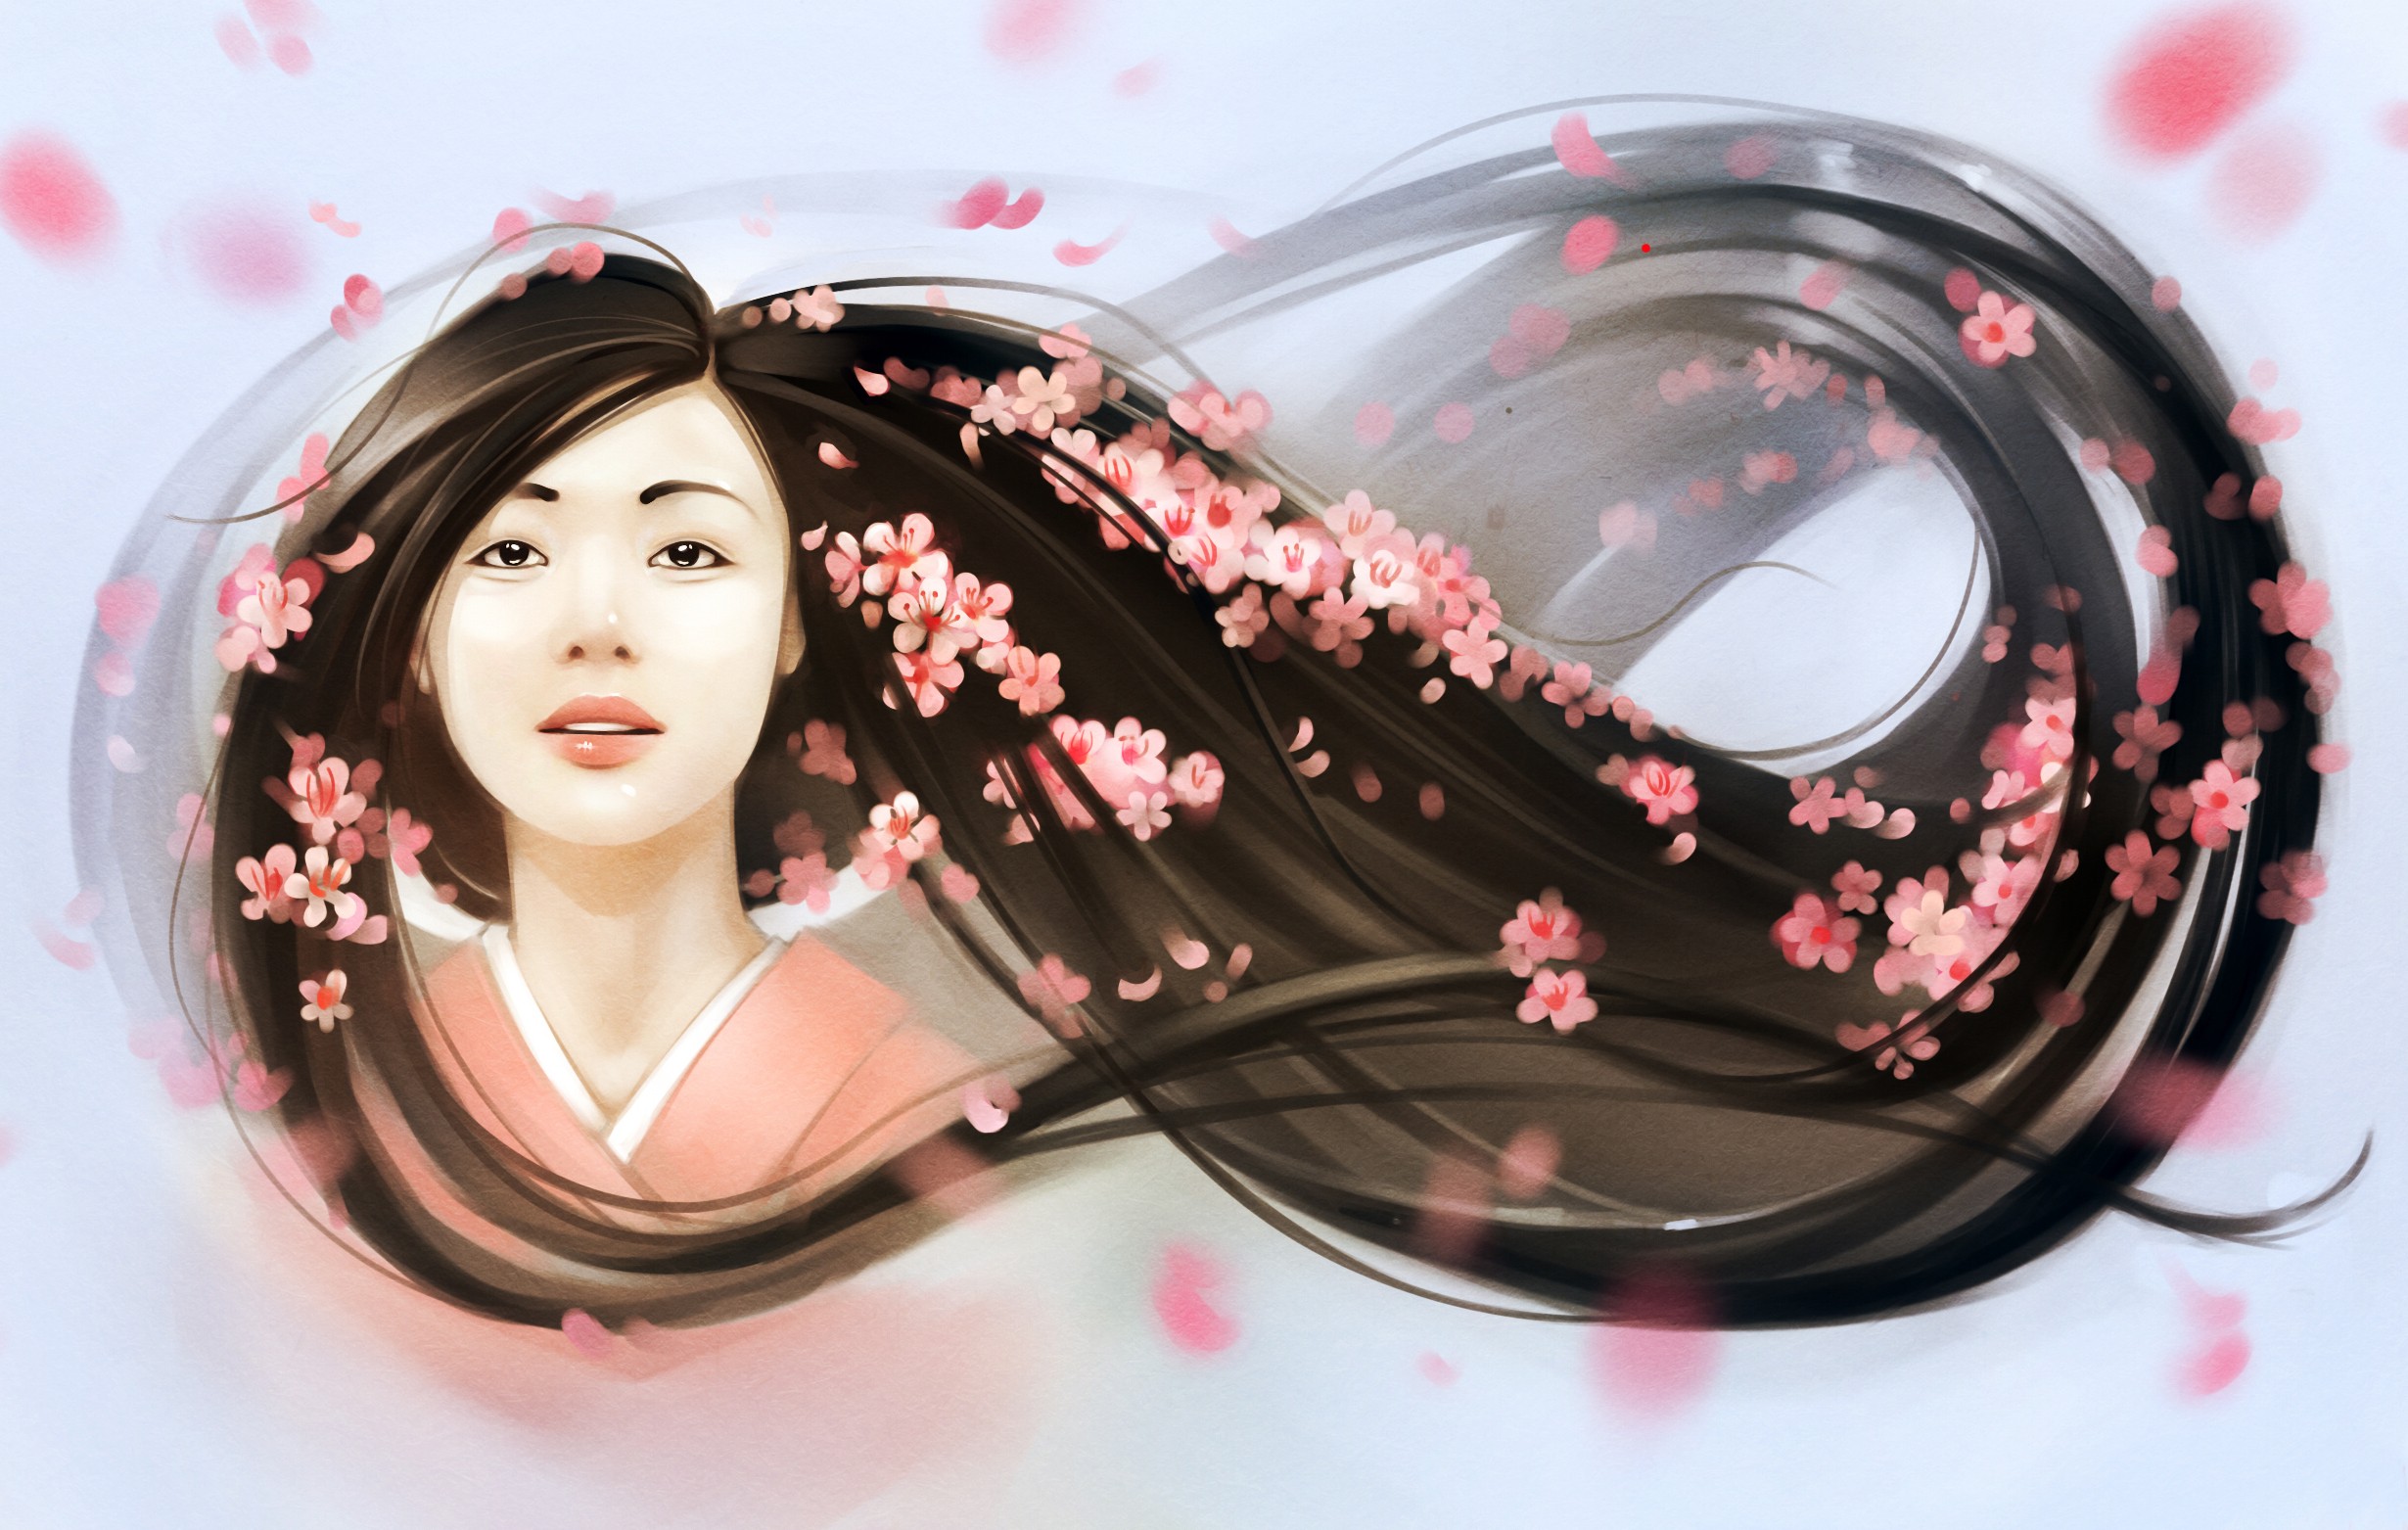 General 2460x1563 Asian women flowers artwork cherry blossom kimono face portrait long hair flower in hair